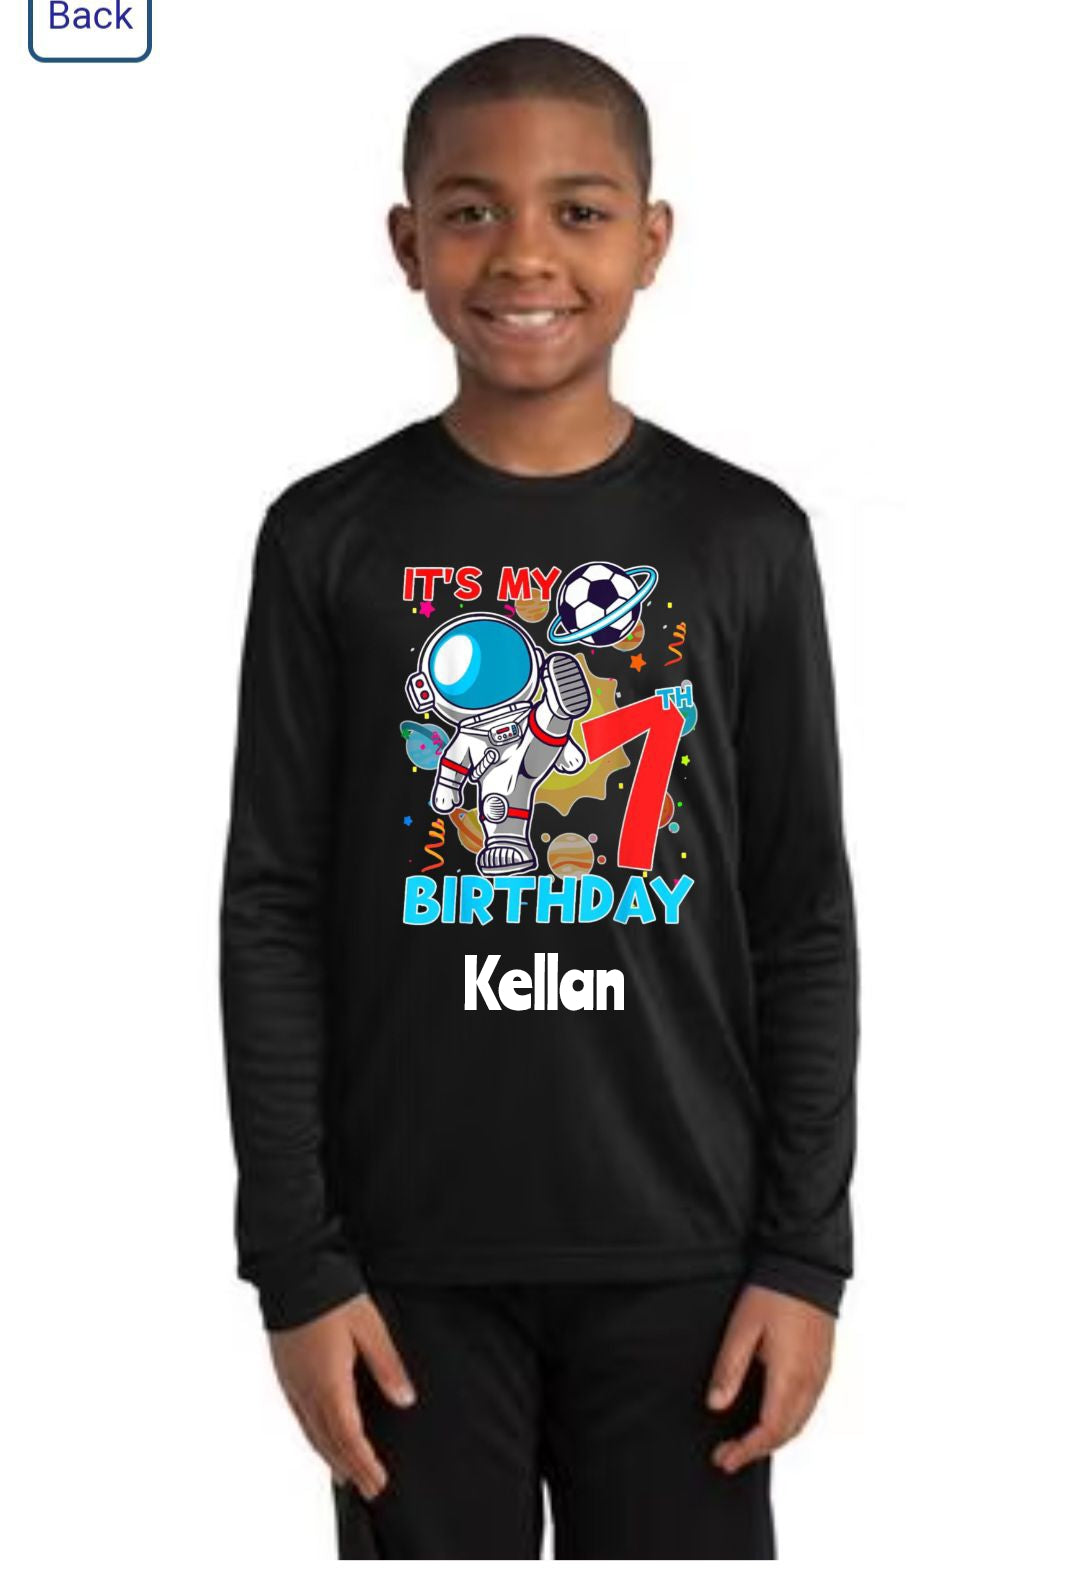 Kellan Birthday Shirt